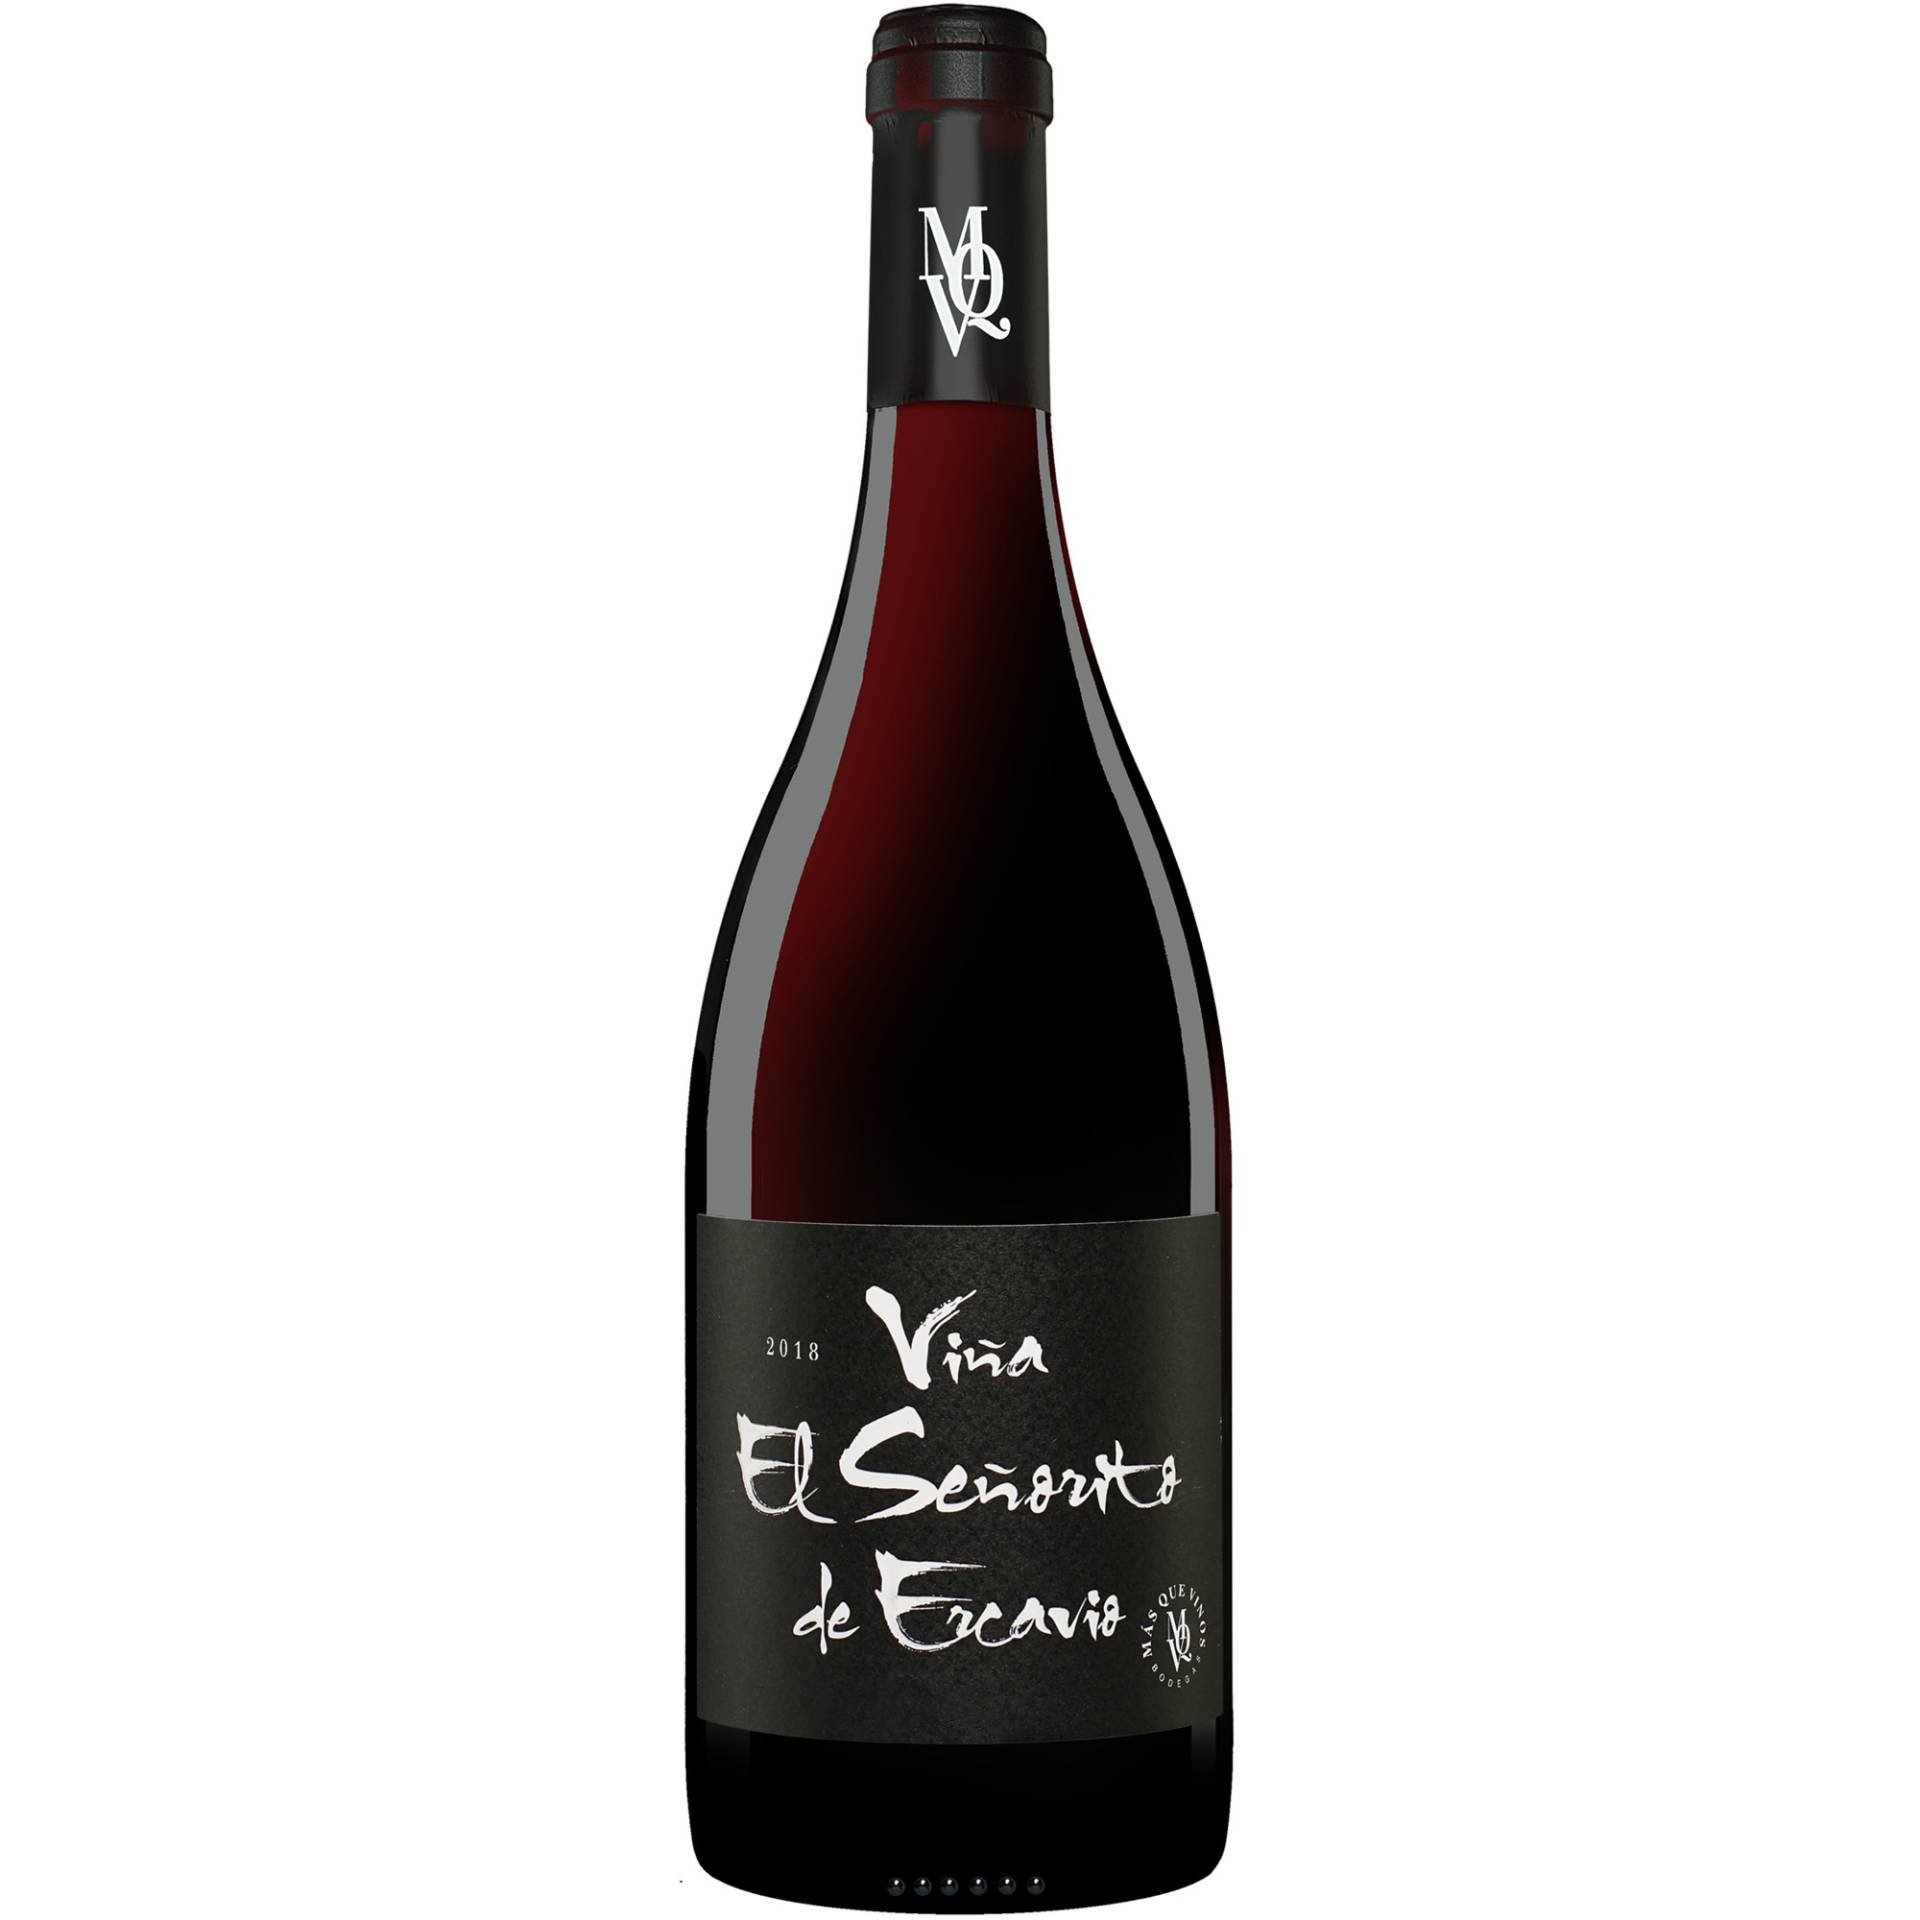 Ercavio »El Señorito« 2018  0.75L 14.5% Vol. Rotwein Trocken aus Spanien von Más que Vinos